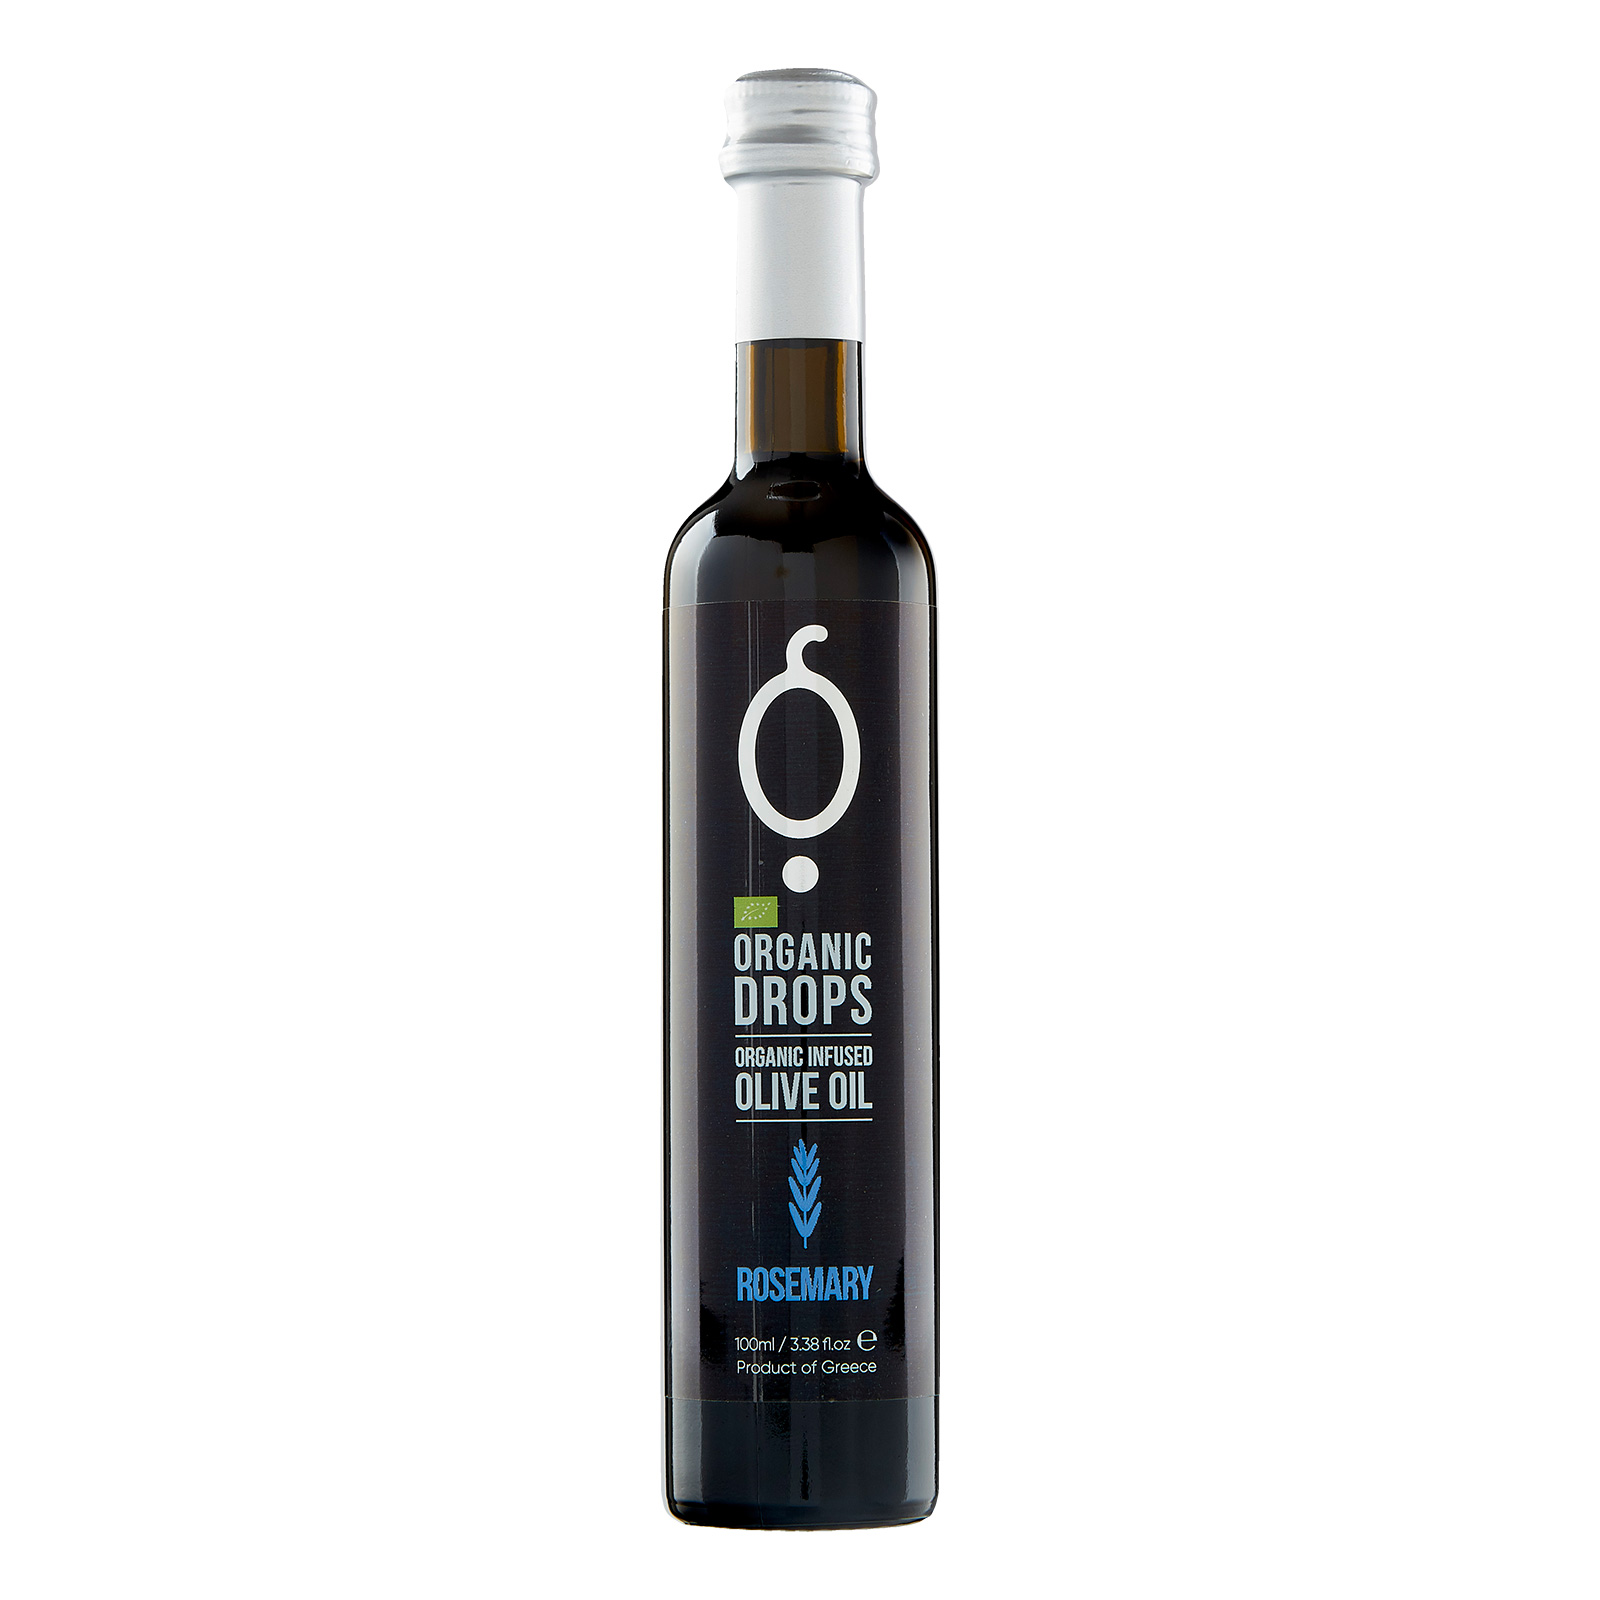 Organic Drops Rosemary Olive Oil 3.38 fl.oz Bottle